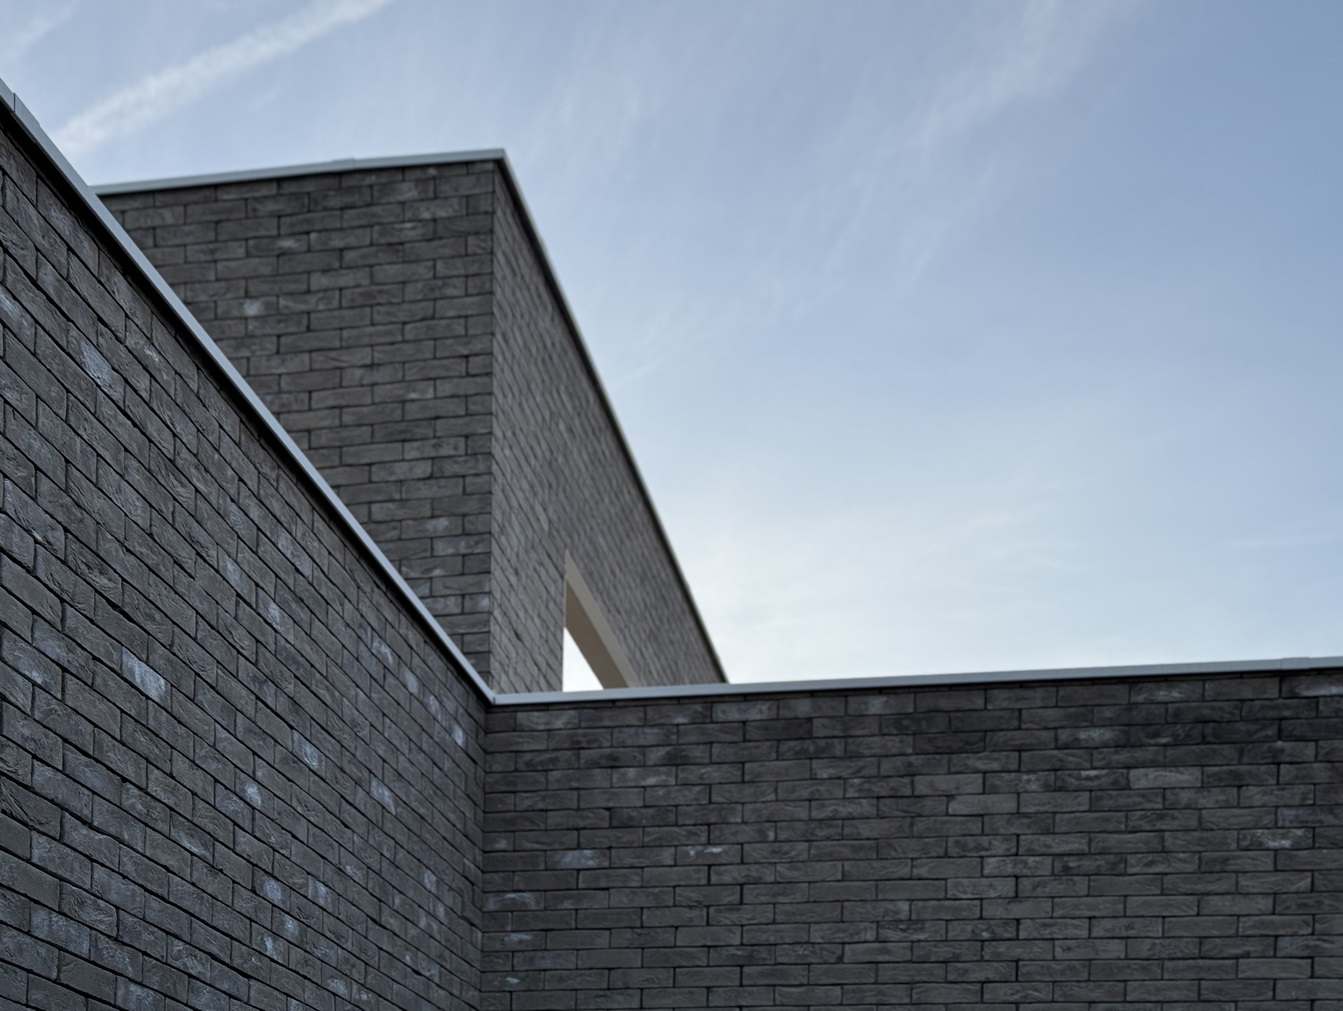 Ekla - Caluire - Logements - Z Architecture - chantier - détail matériau brique